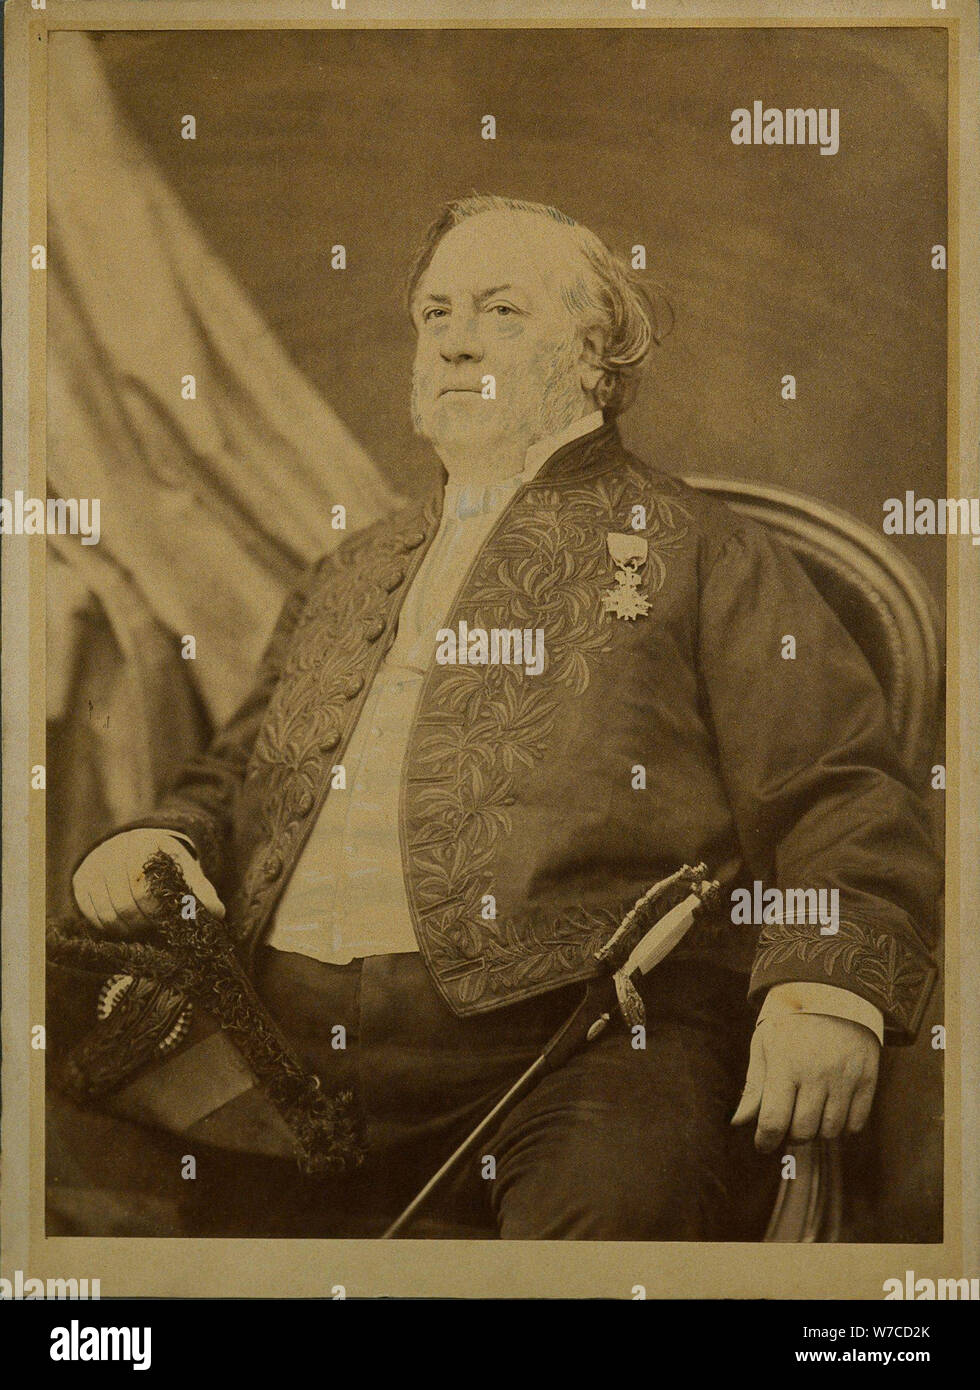 Portrait of the composer Louis Clapisson (1808-1866). Stock Photo